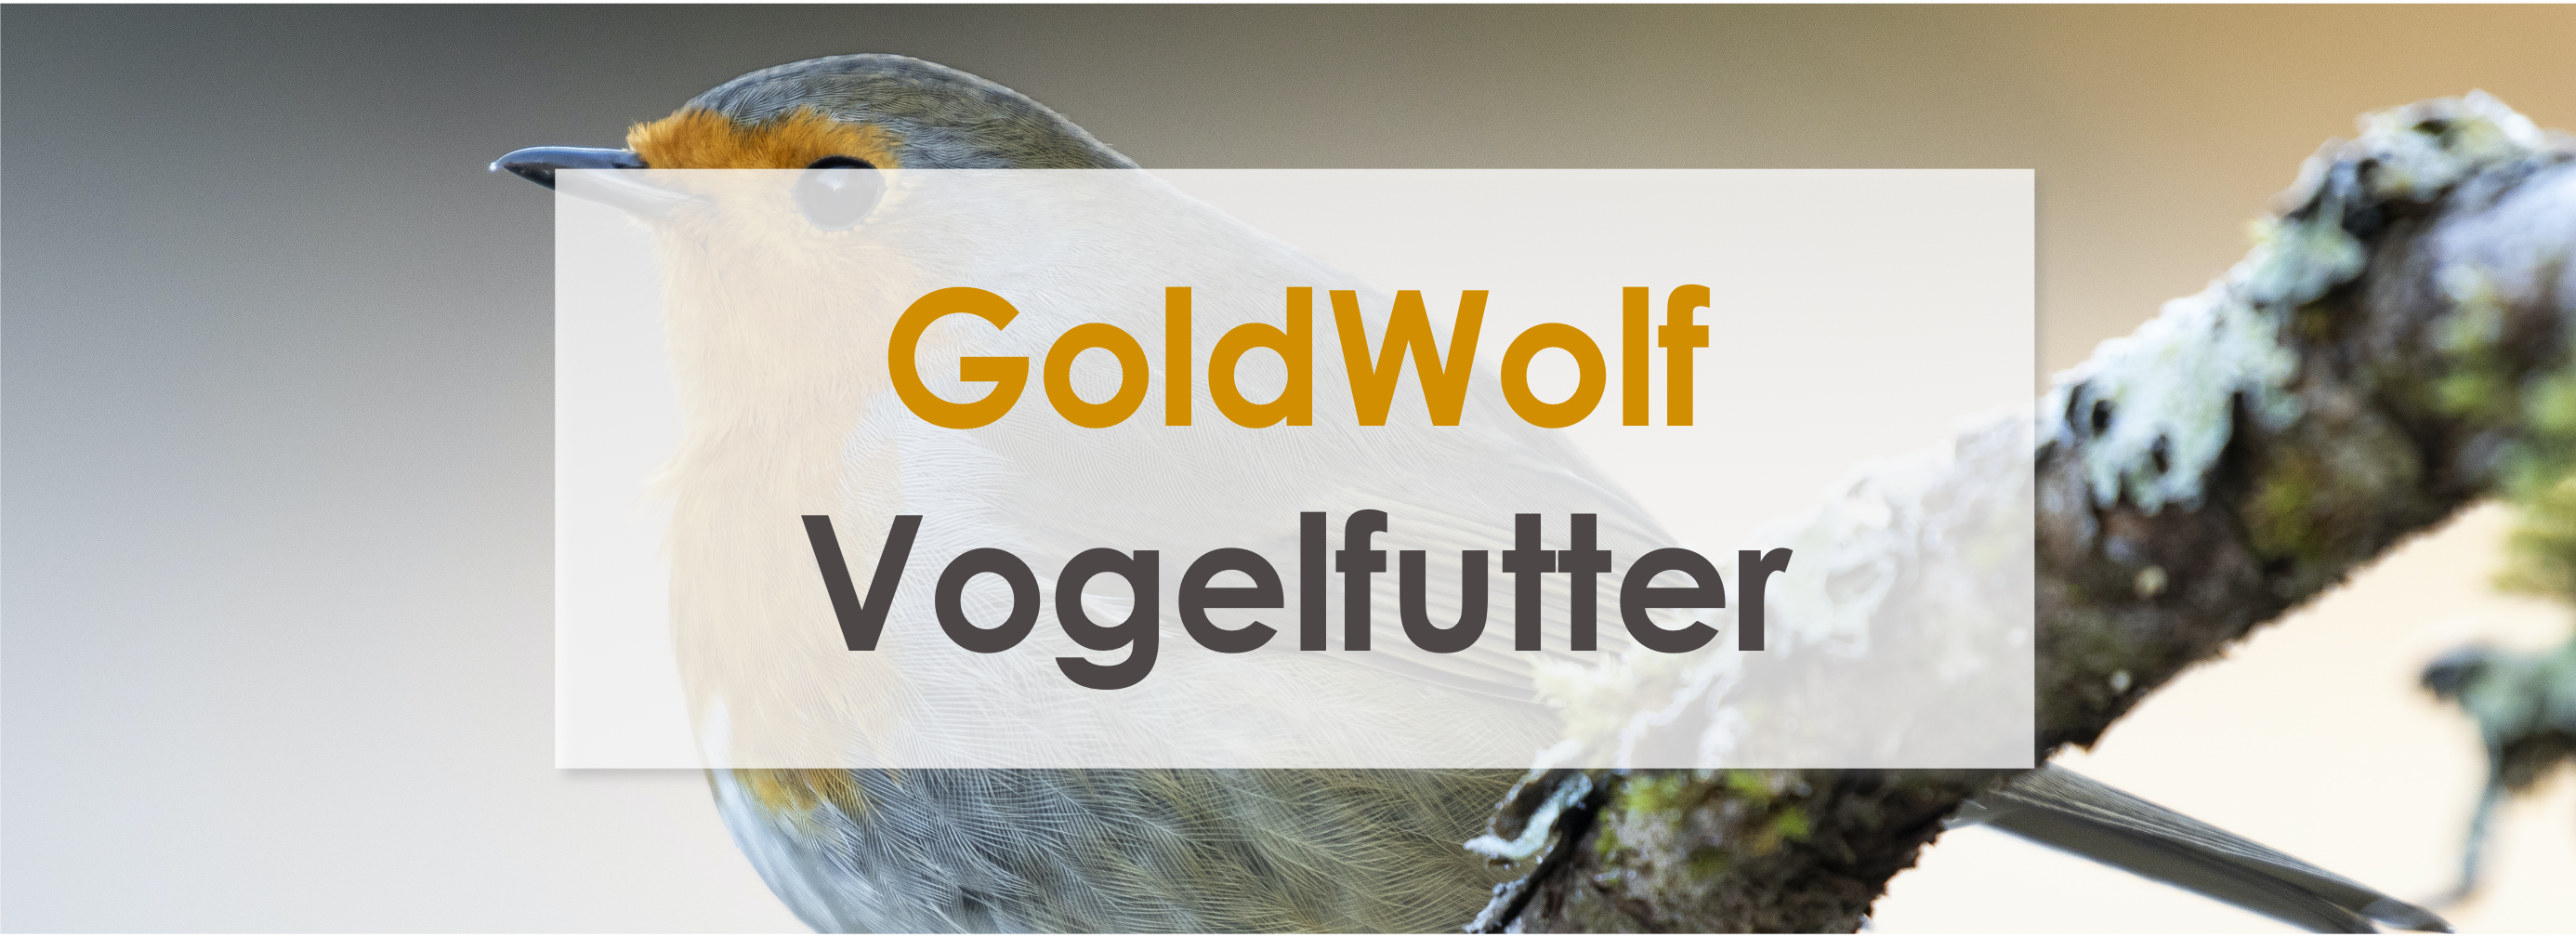 Goldwolf – Vogelfutter